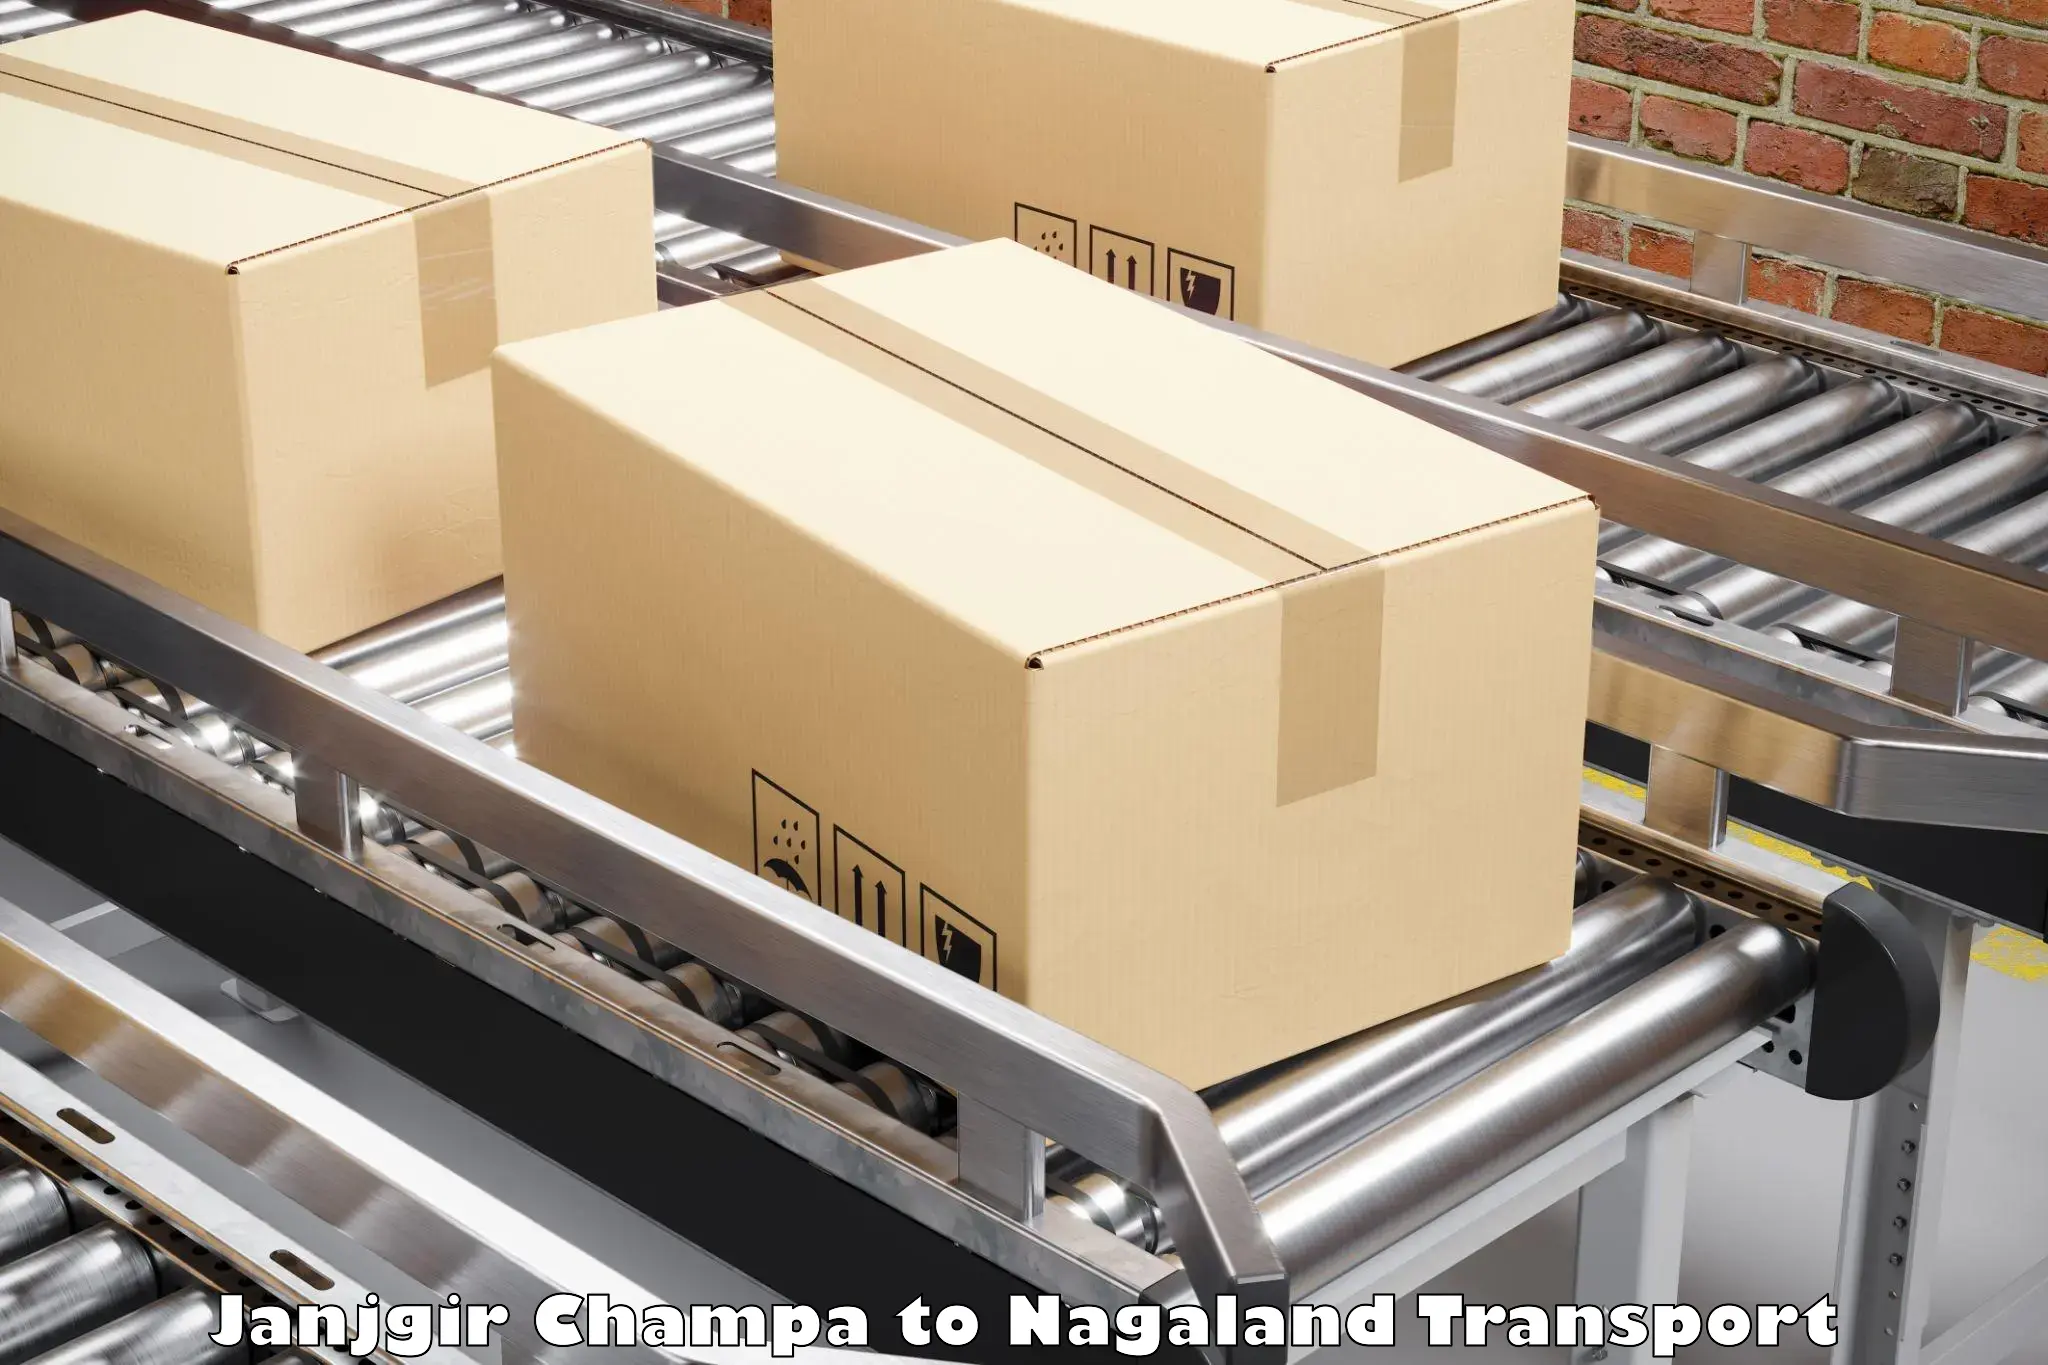 Shipping partner Janjgir Champa to Nagaland